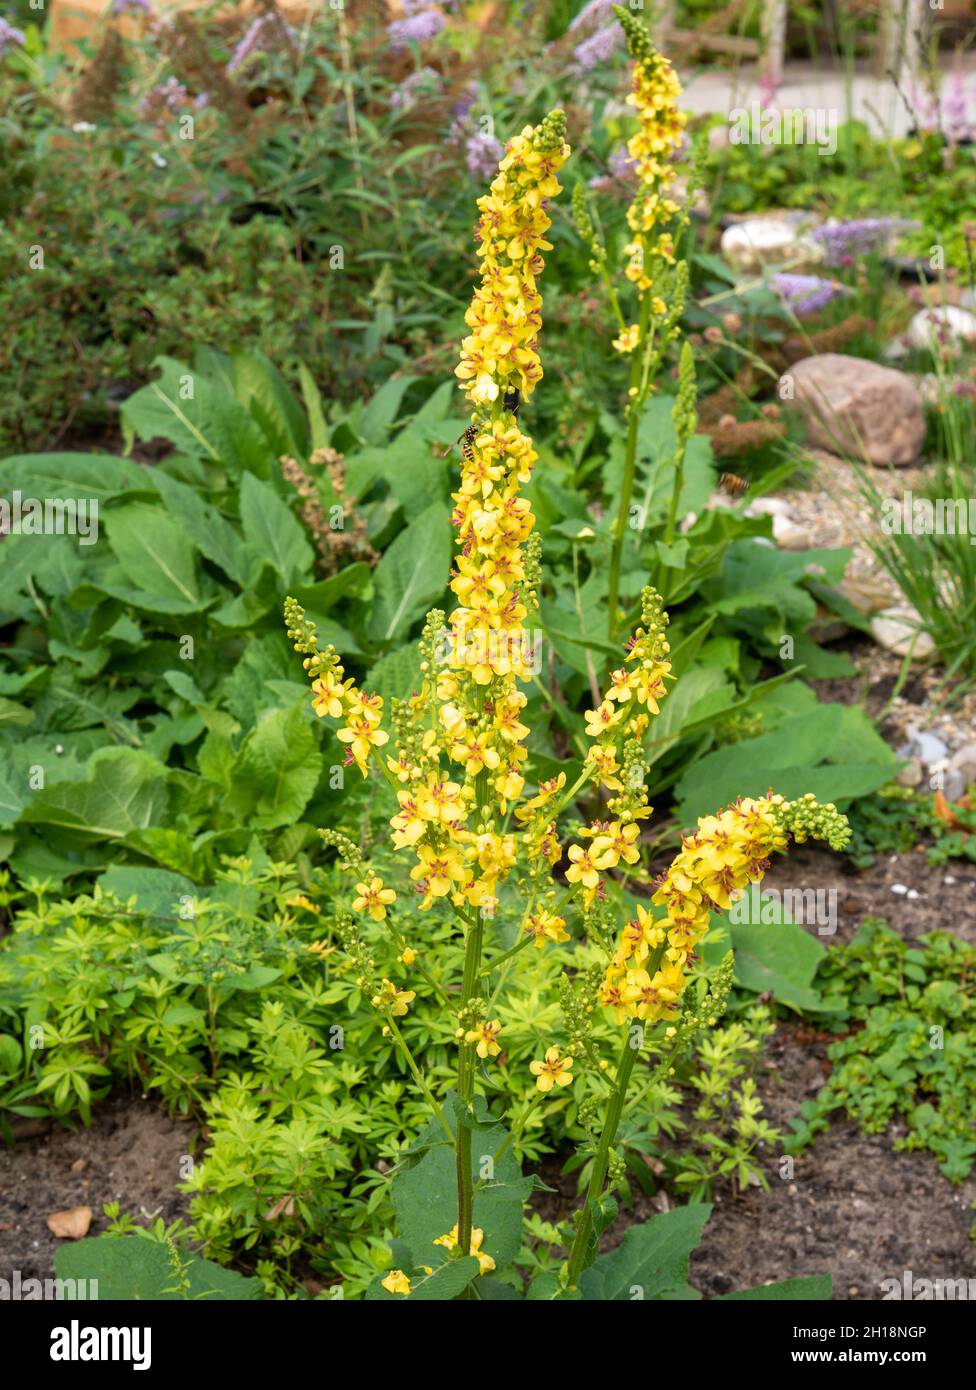 Mulein negro o mulein oscuro, Verbascum nigrum, planta silvestre con flores amarillas que crecen en el jardín, Países Bajos Foto de stock